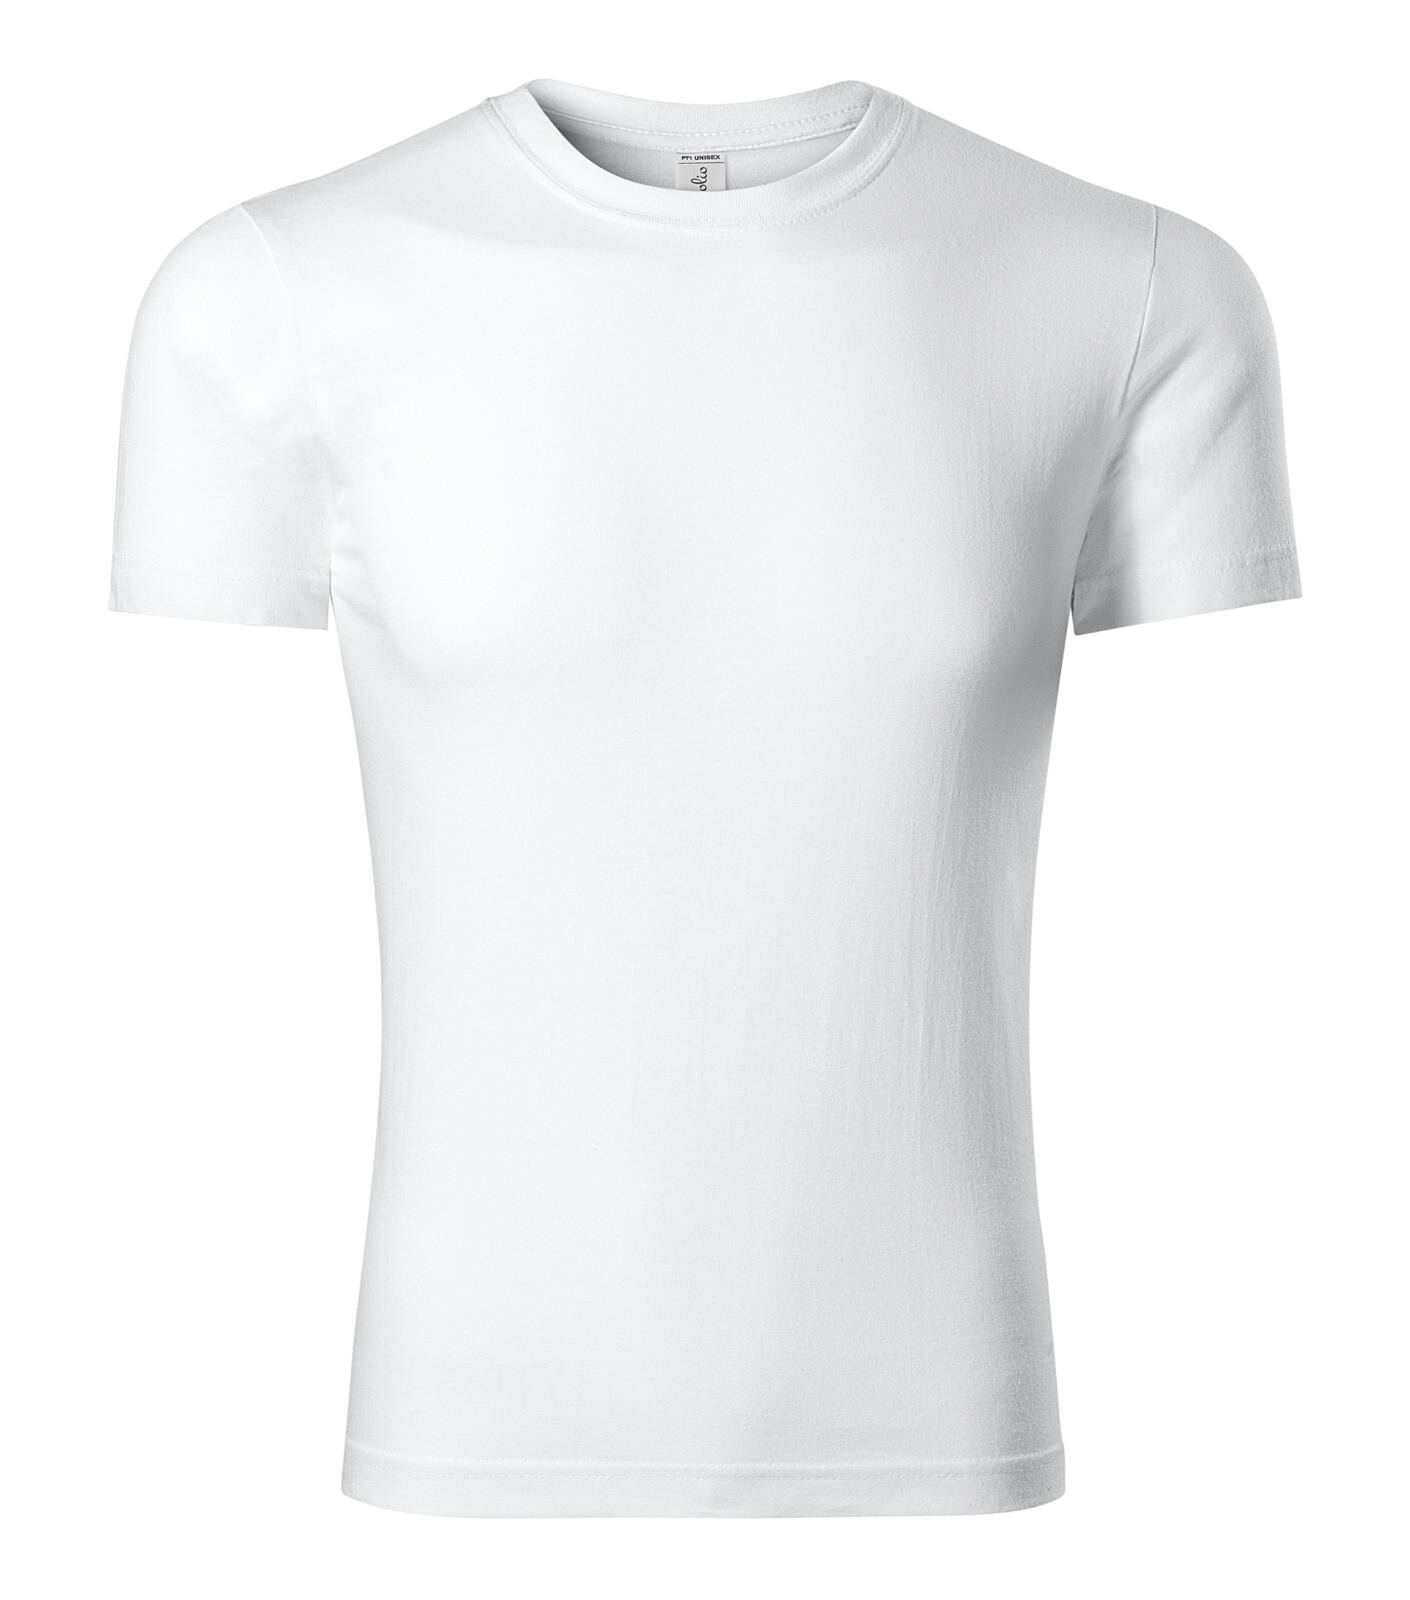 Unisex bavlnené tričko Piccolio Parade P71 - veľkosť: XXL, farba: biela